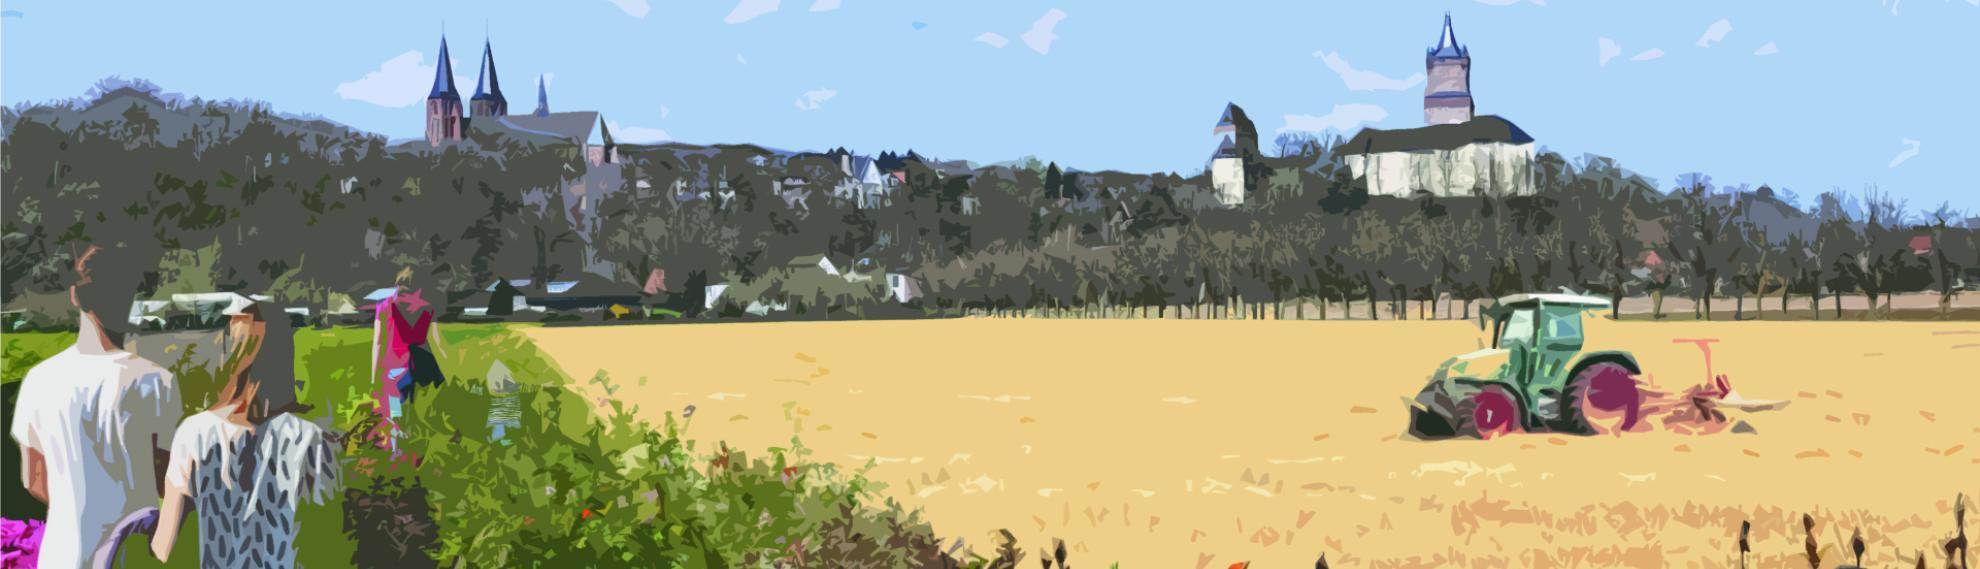 Eine Illustration einer möglichen Installation zur Landesgartenschau 2029 in den Galleien, im Hintergrund die Silhouette der Stiftskirche und der Schwanenburg